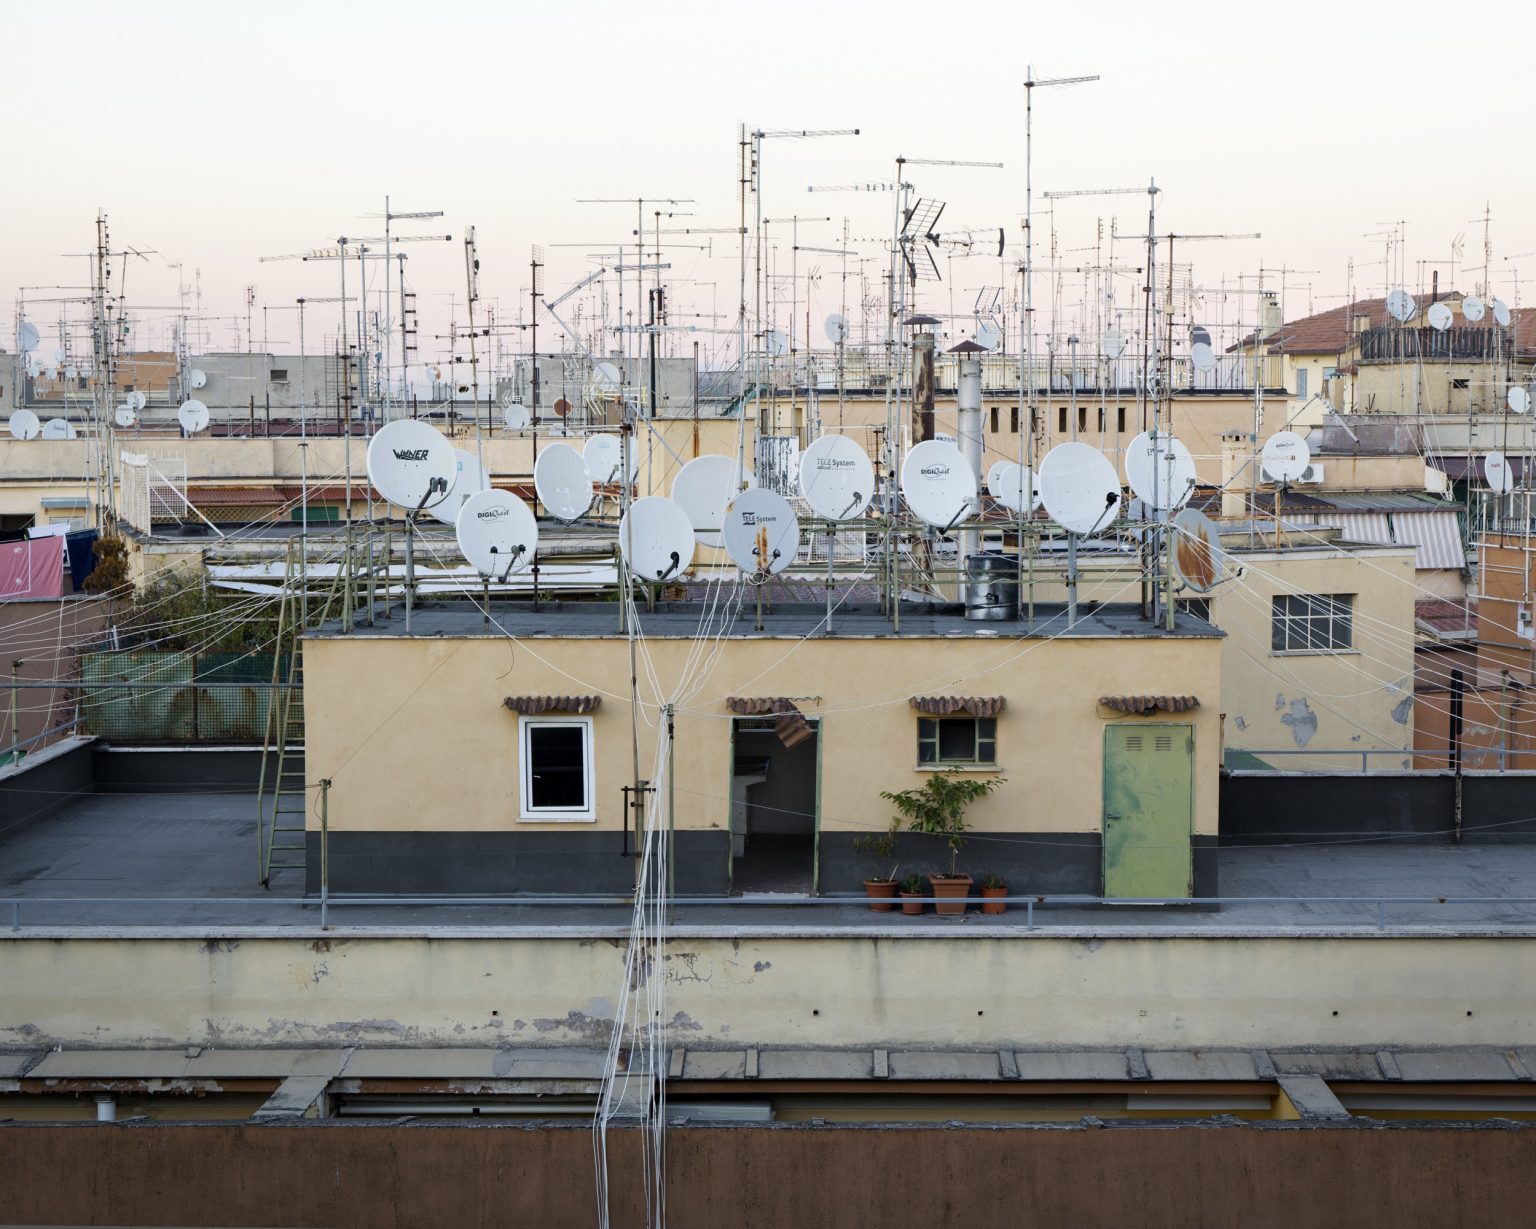 Rome, December 2015 - view over the houses of Torpignattara district from via Guido Cora.
><
Roma, dicembre 2015 - veduta sulle abitazioni di Tor Pignattara da via Guido Cora.